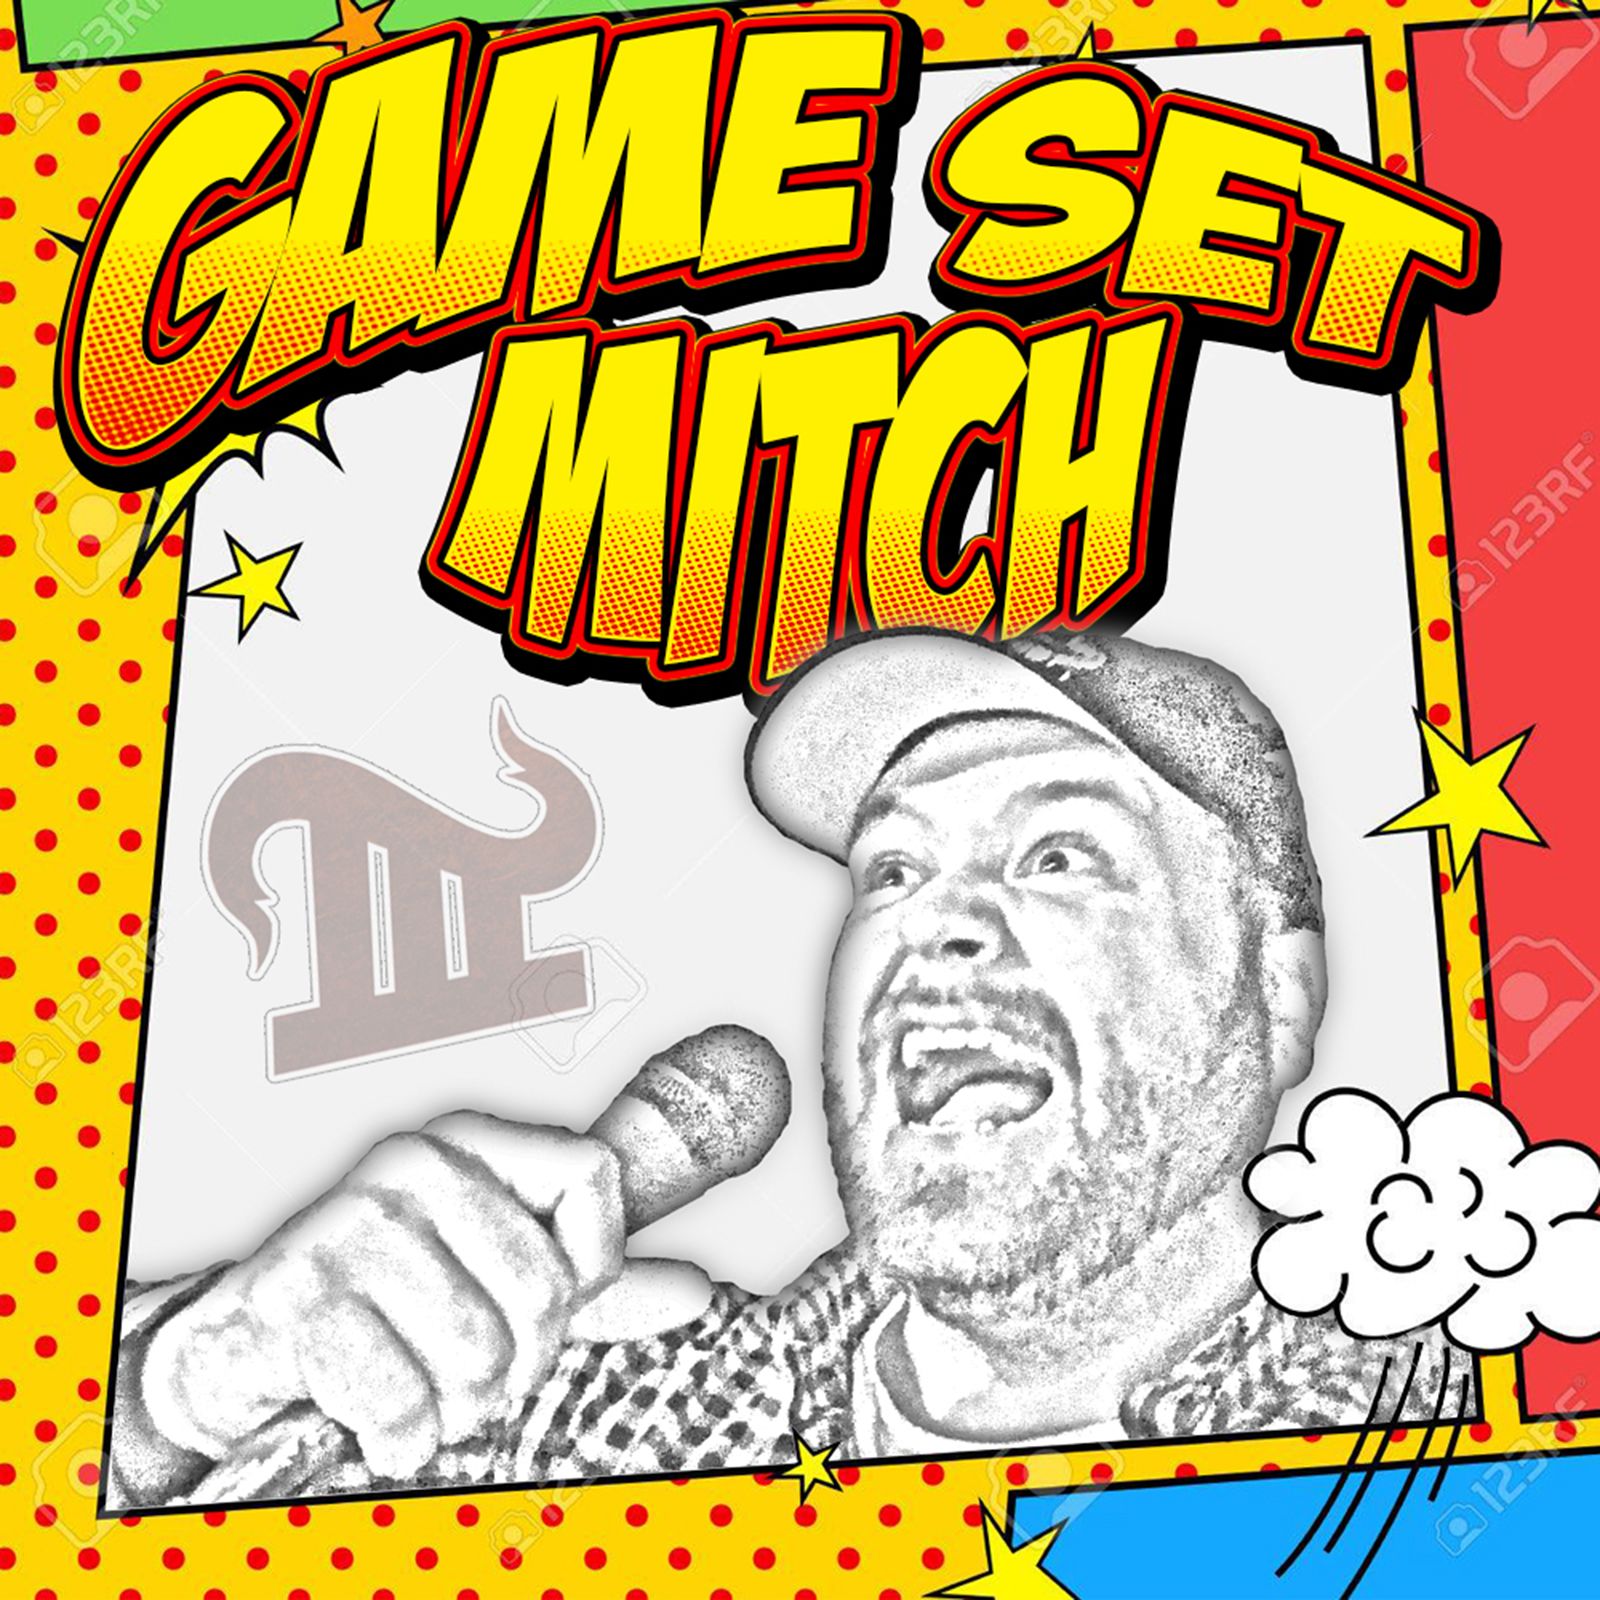 Game Set Mitch